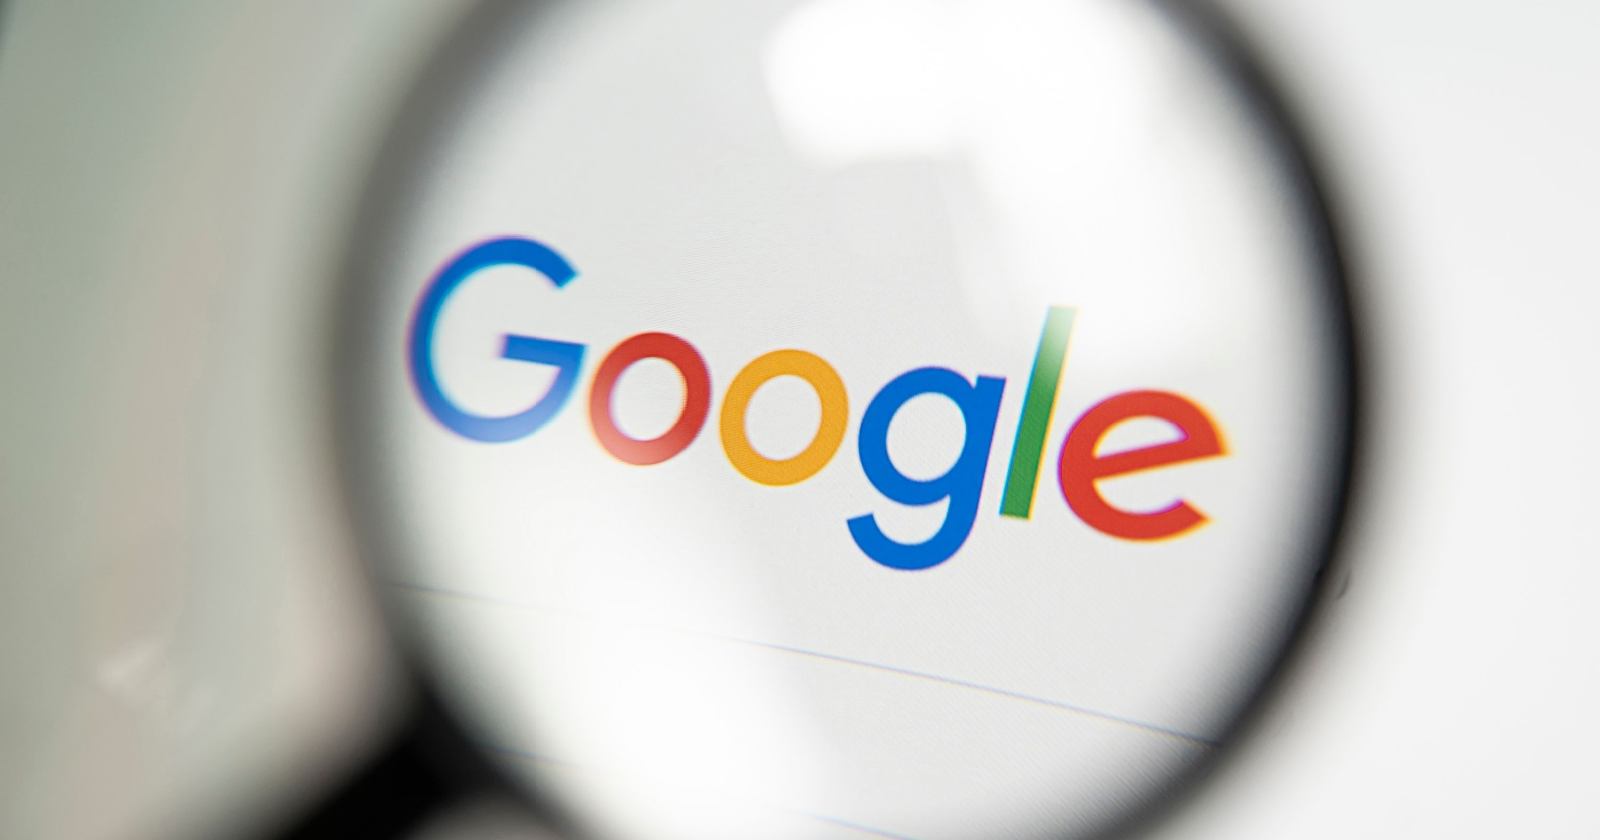 Google betaalt 62 miljoen dollar compensatie voor het volgen van locaties zonder toestemming